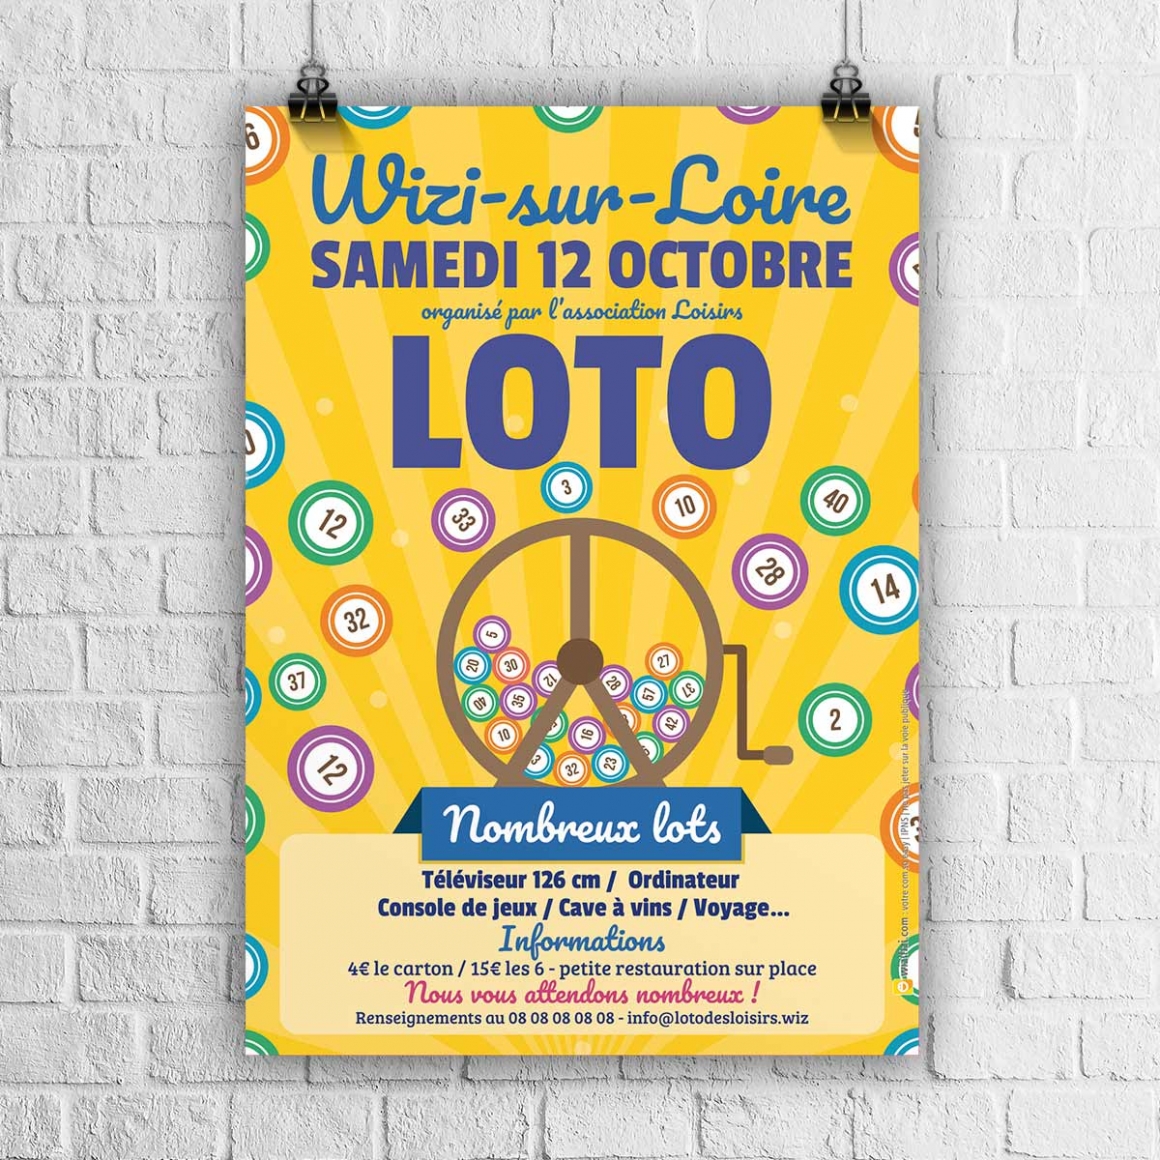 Jeux : Super loto bingo Création impression affiches flyers panneaux